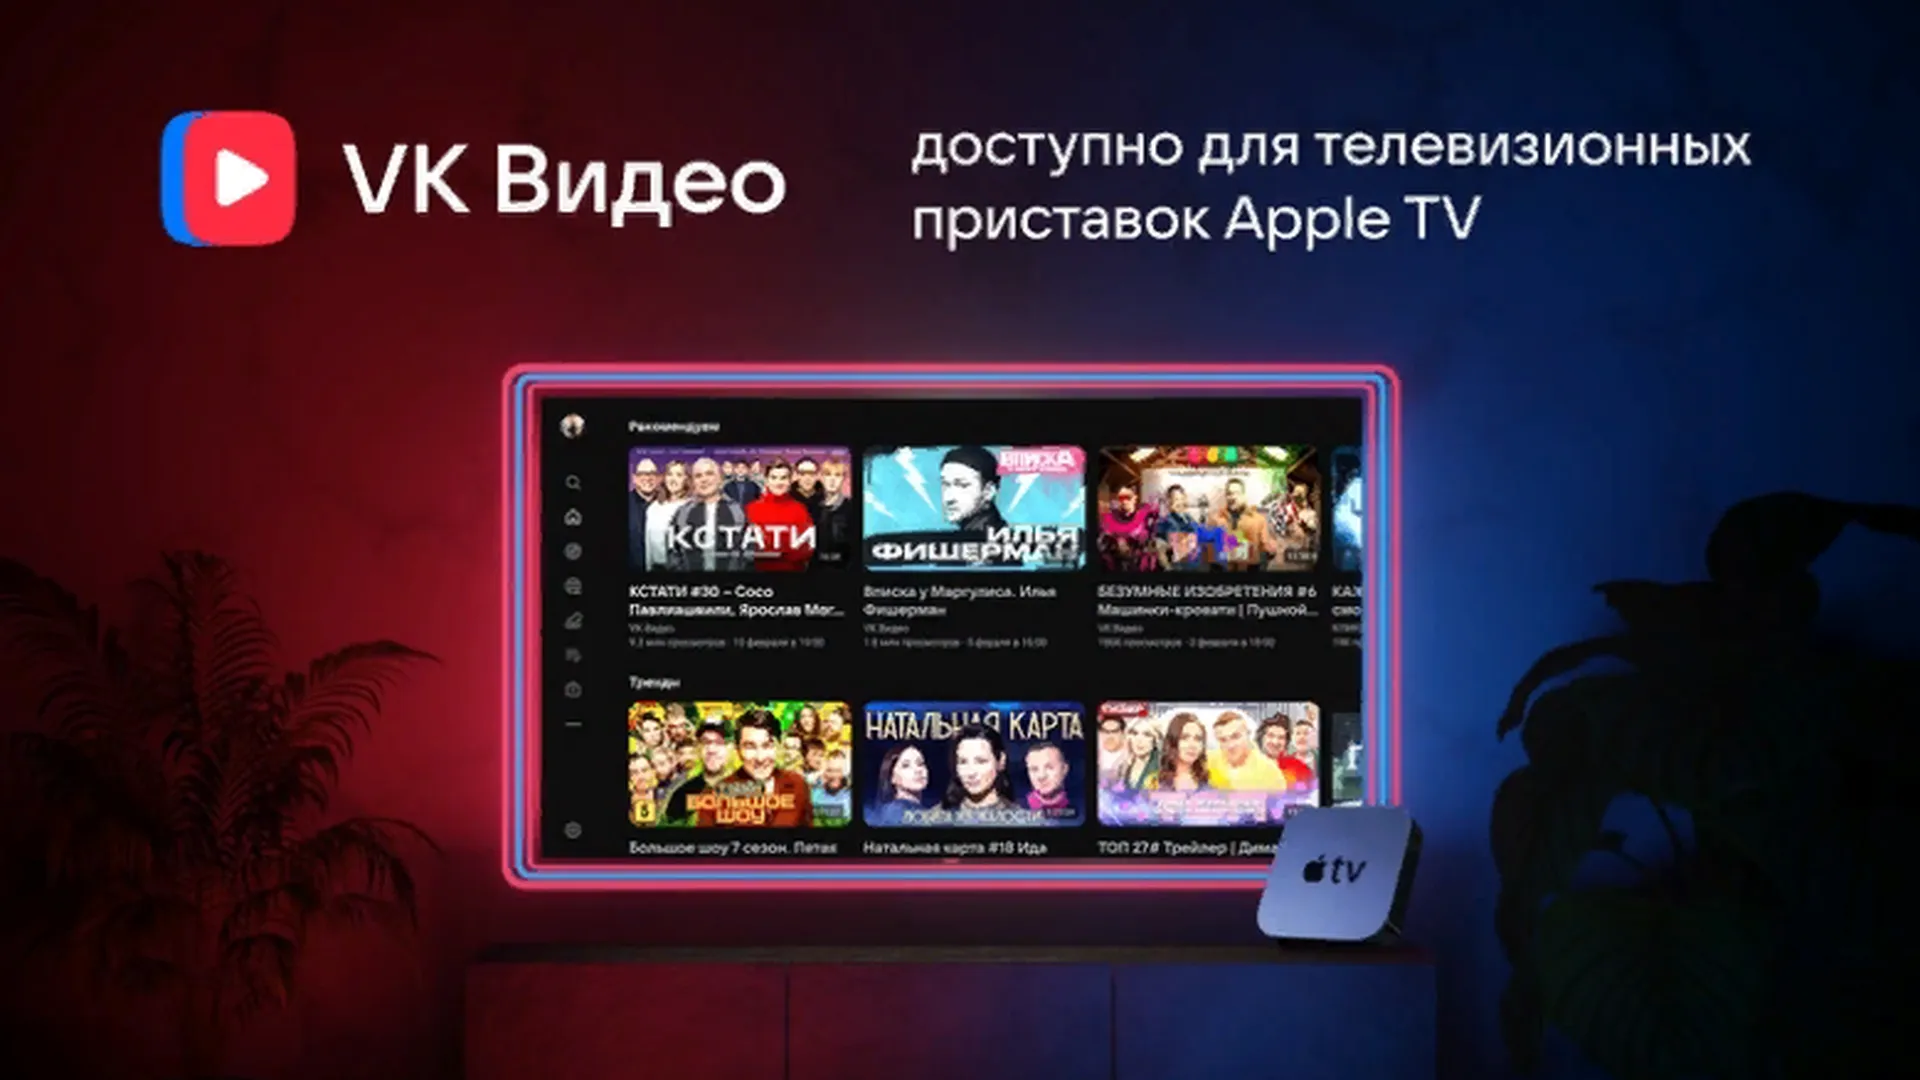 «VK Видео» в Apple TV. Появилась бета-версия приложения для телевизионных приставок